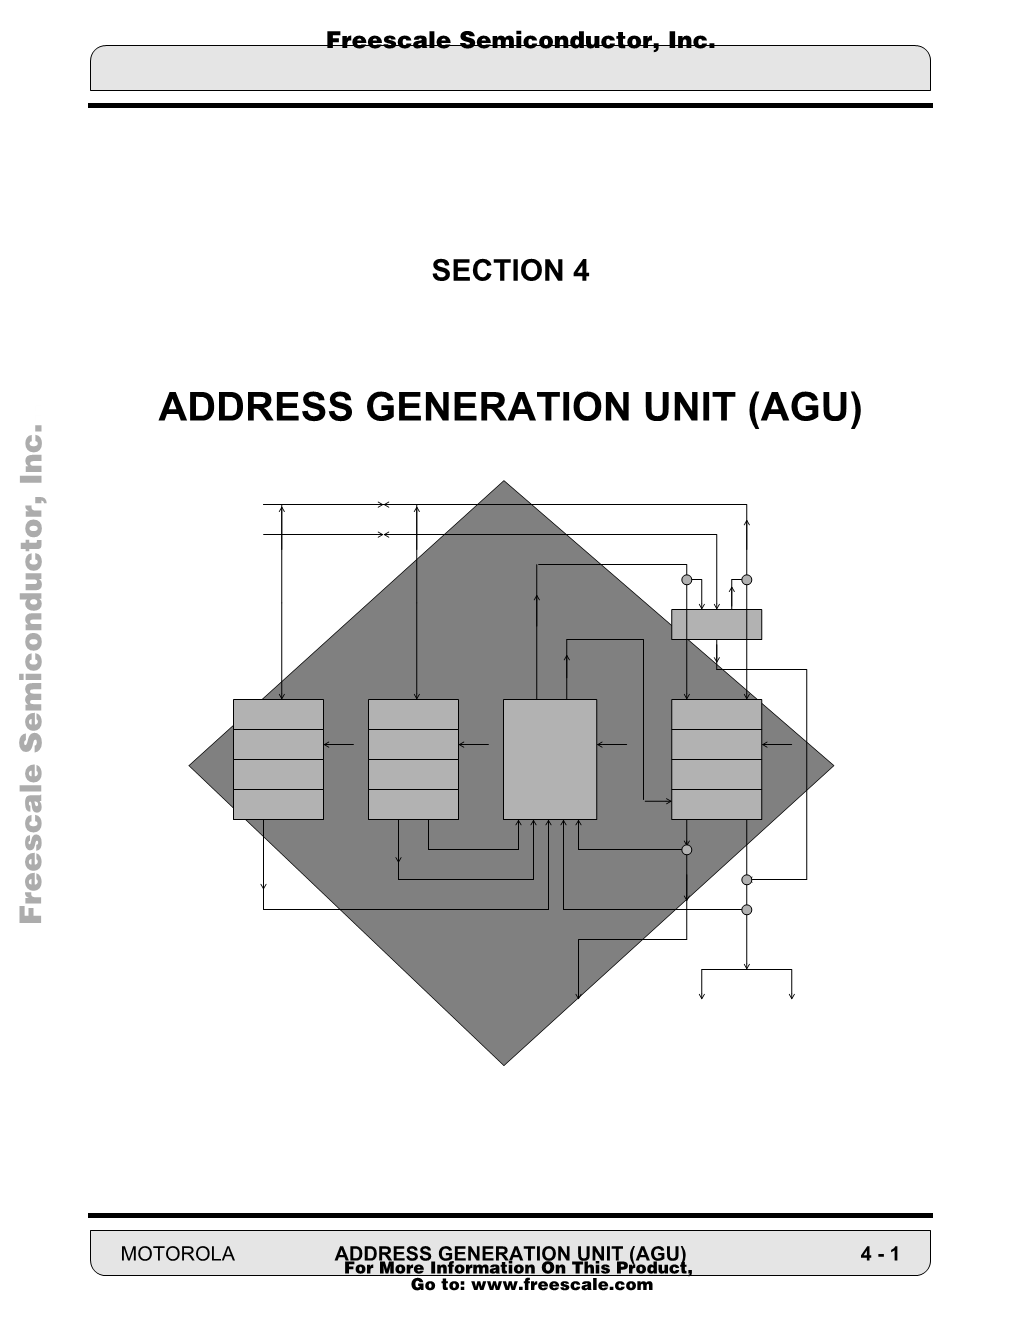 Address Generation Unit (Agu)